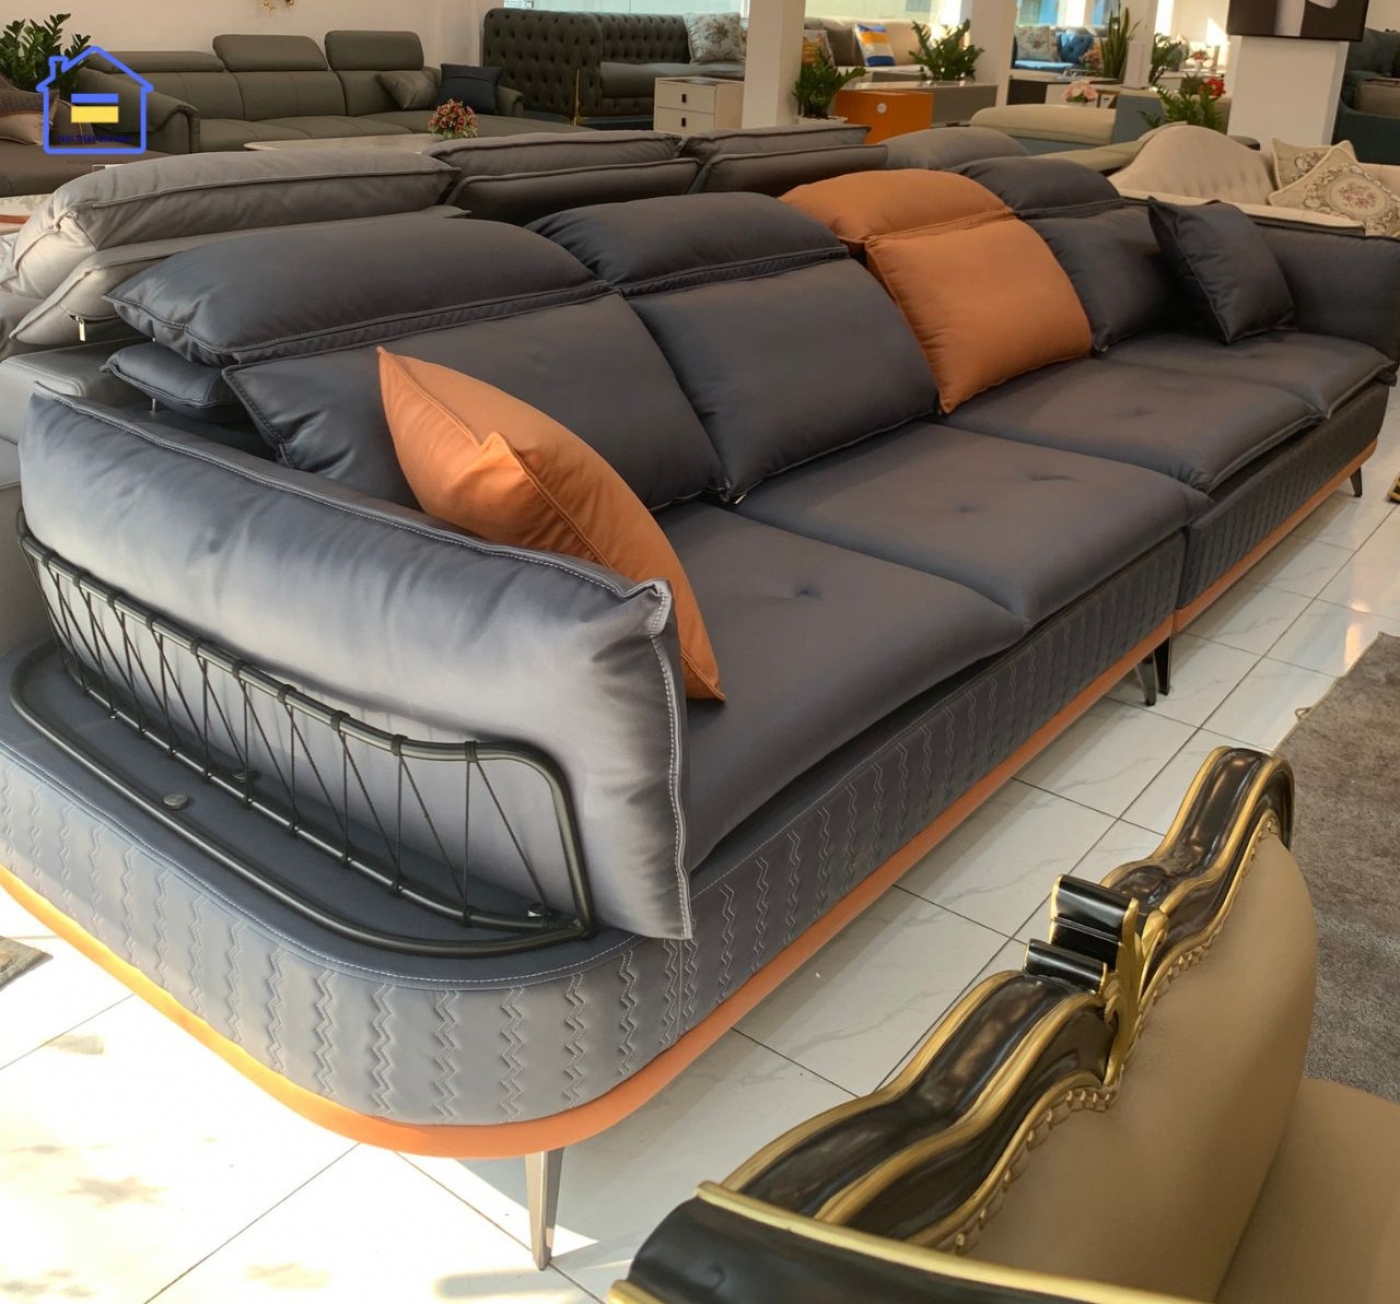 Sofa băng vải công nghệ cao cấp NTVT004